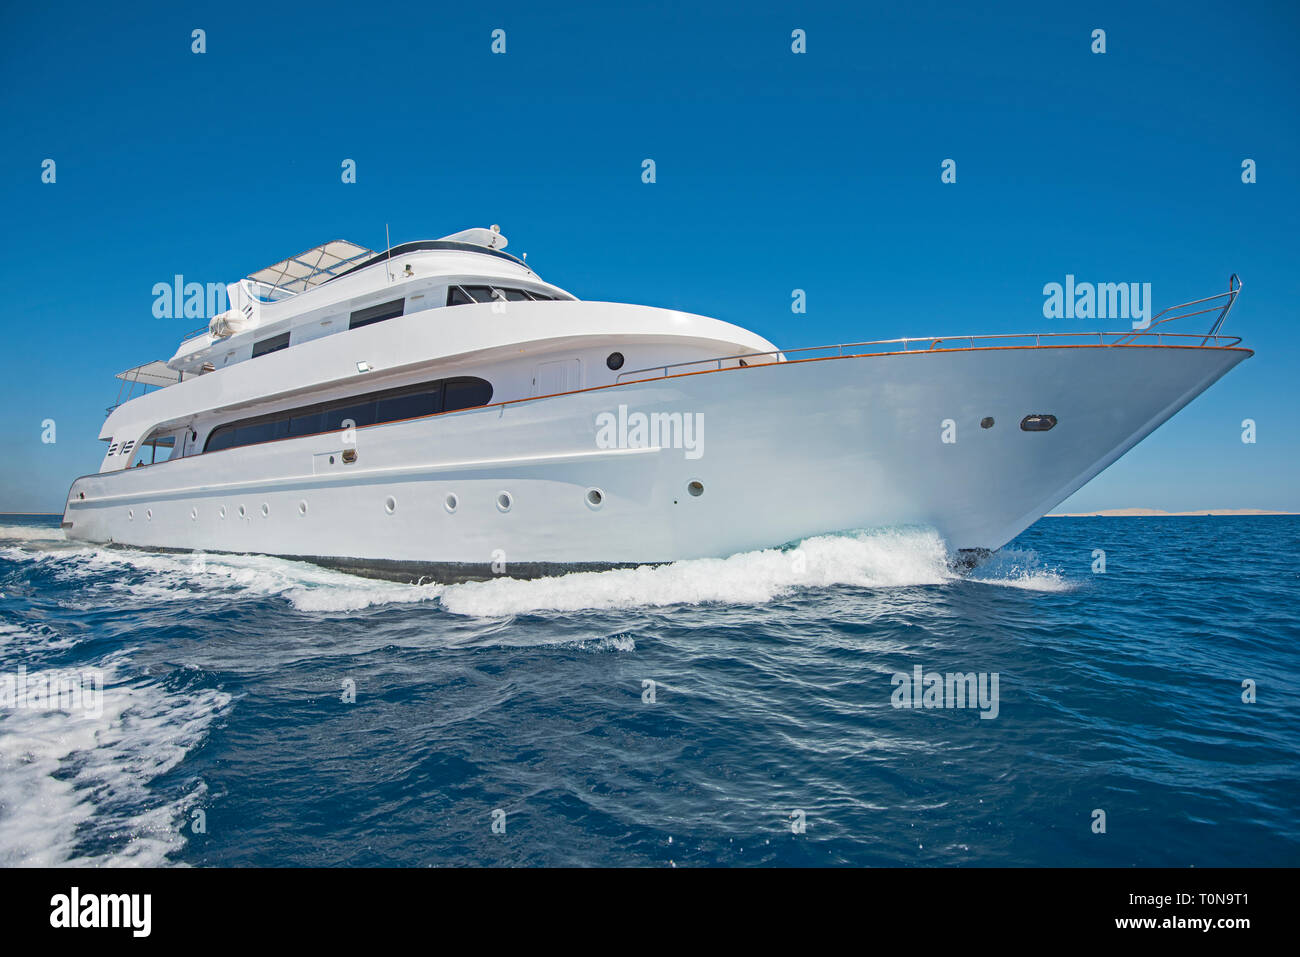 Großen Luxus Motoryacht unterwegs, Segeln auf tropischen Meer Ozean mit blauem Himmel Hintergrund Stockfoto